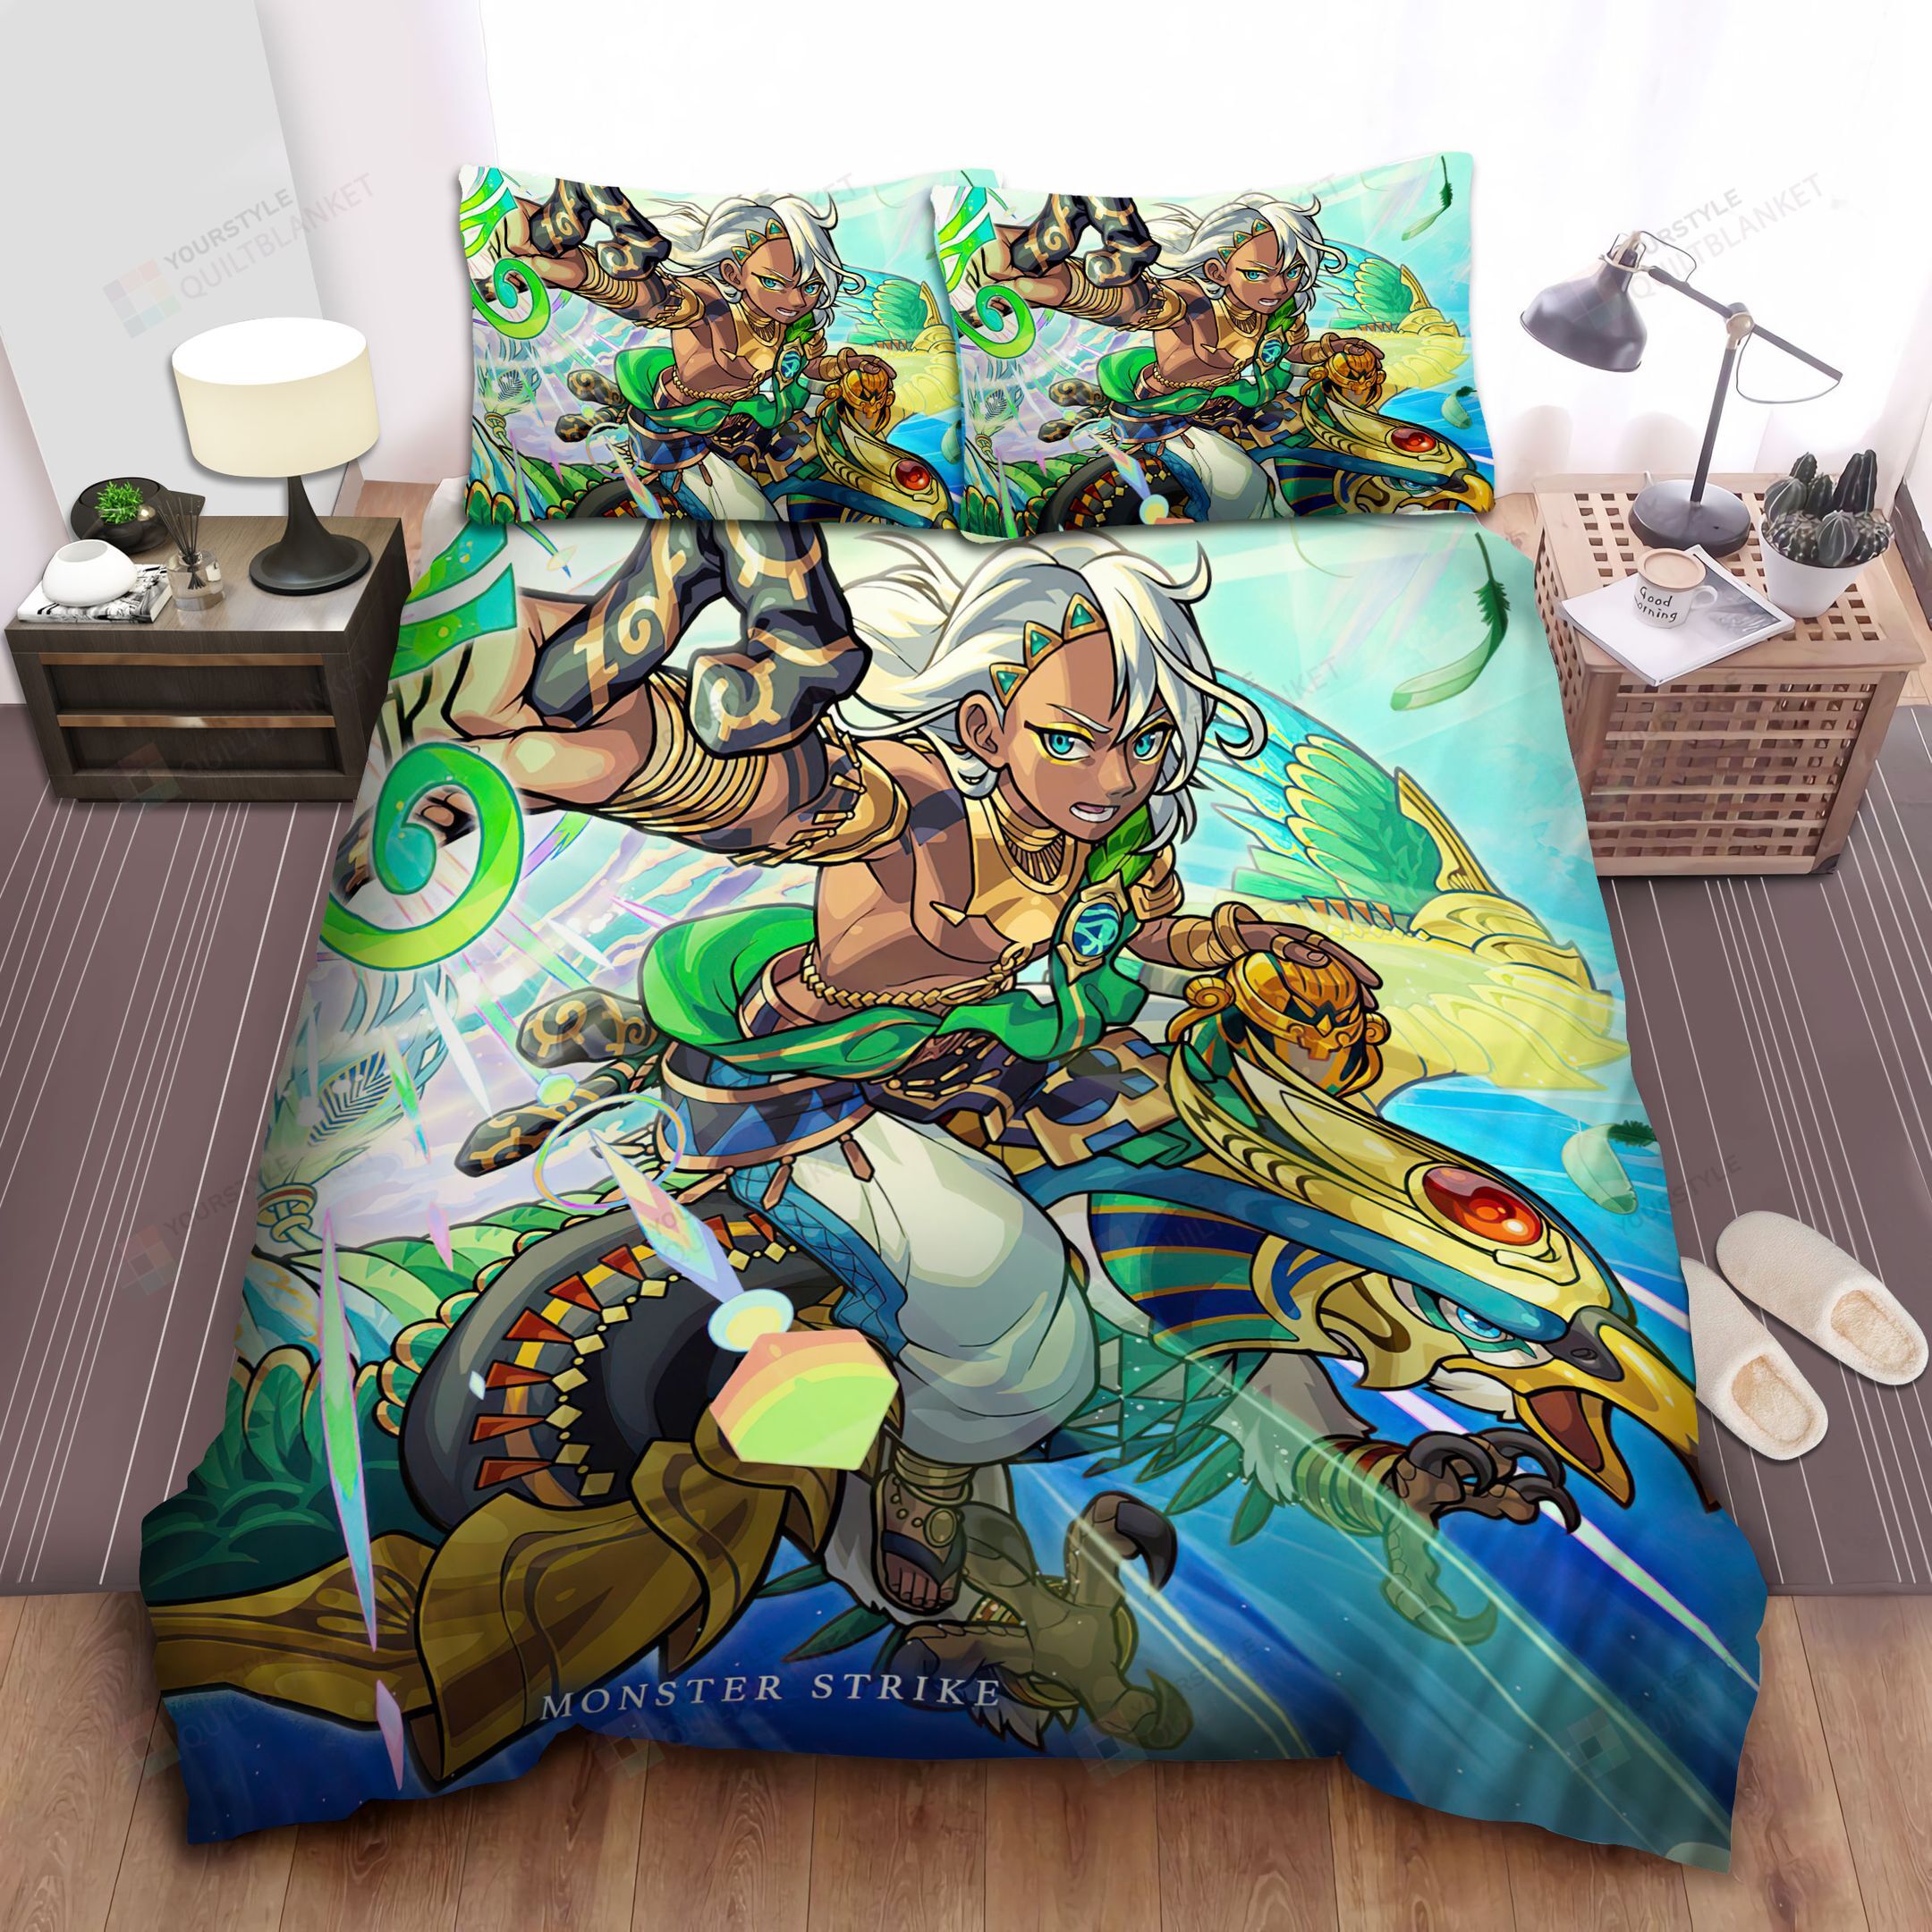 Monster Strike Tutankhamun Evolution Artwork Bed Sheets Spread Comforter Duvet Cover Bedding Sets